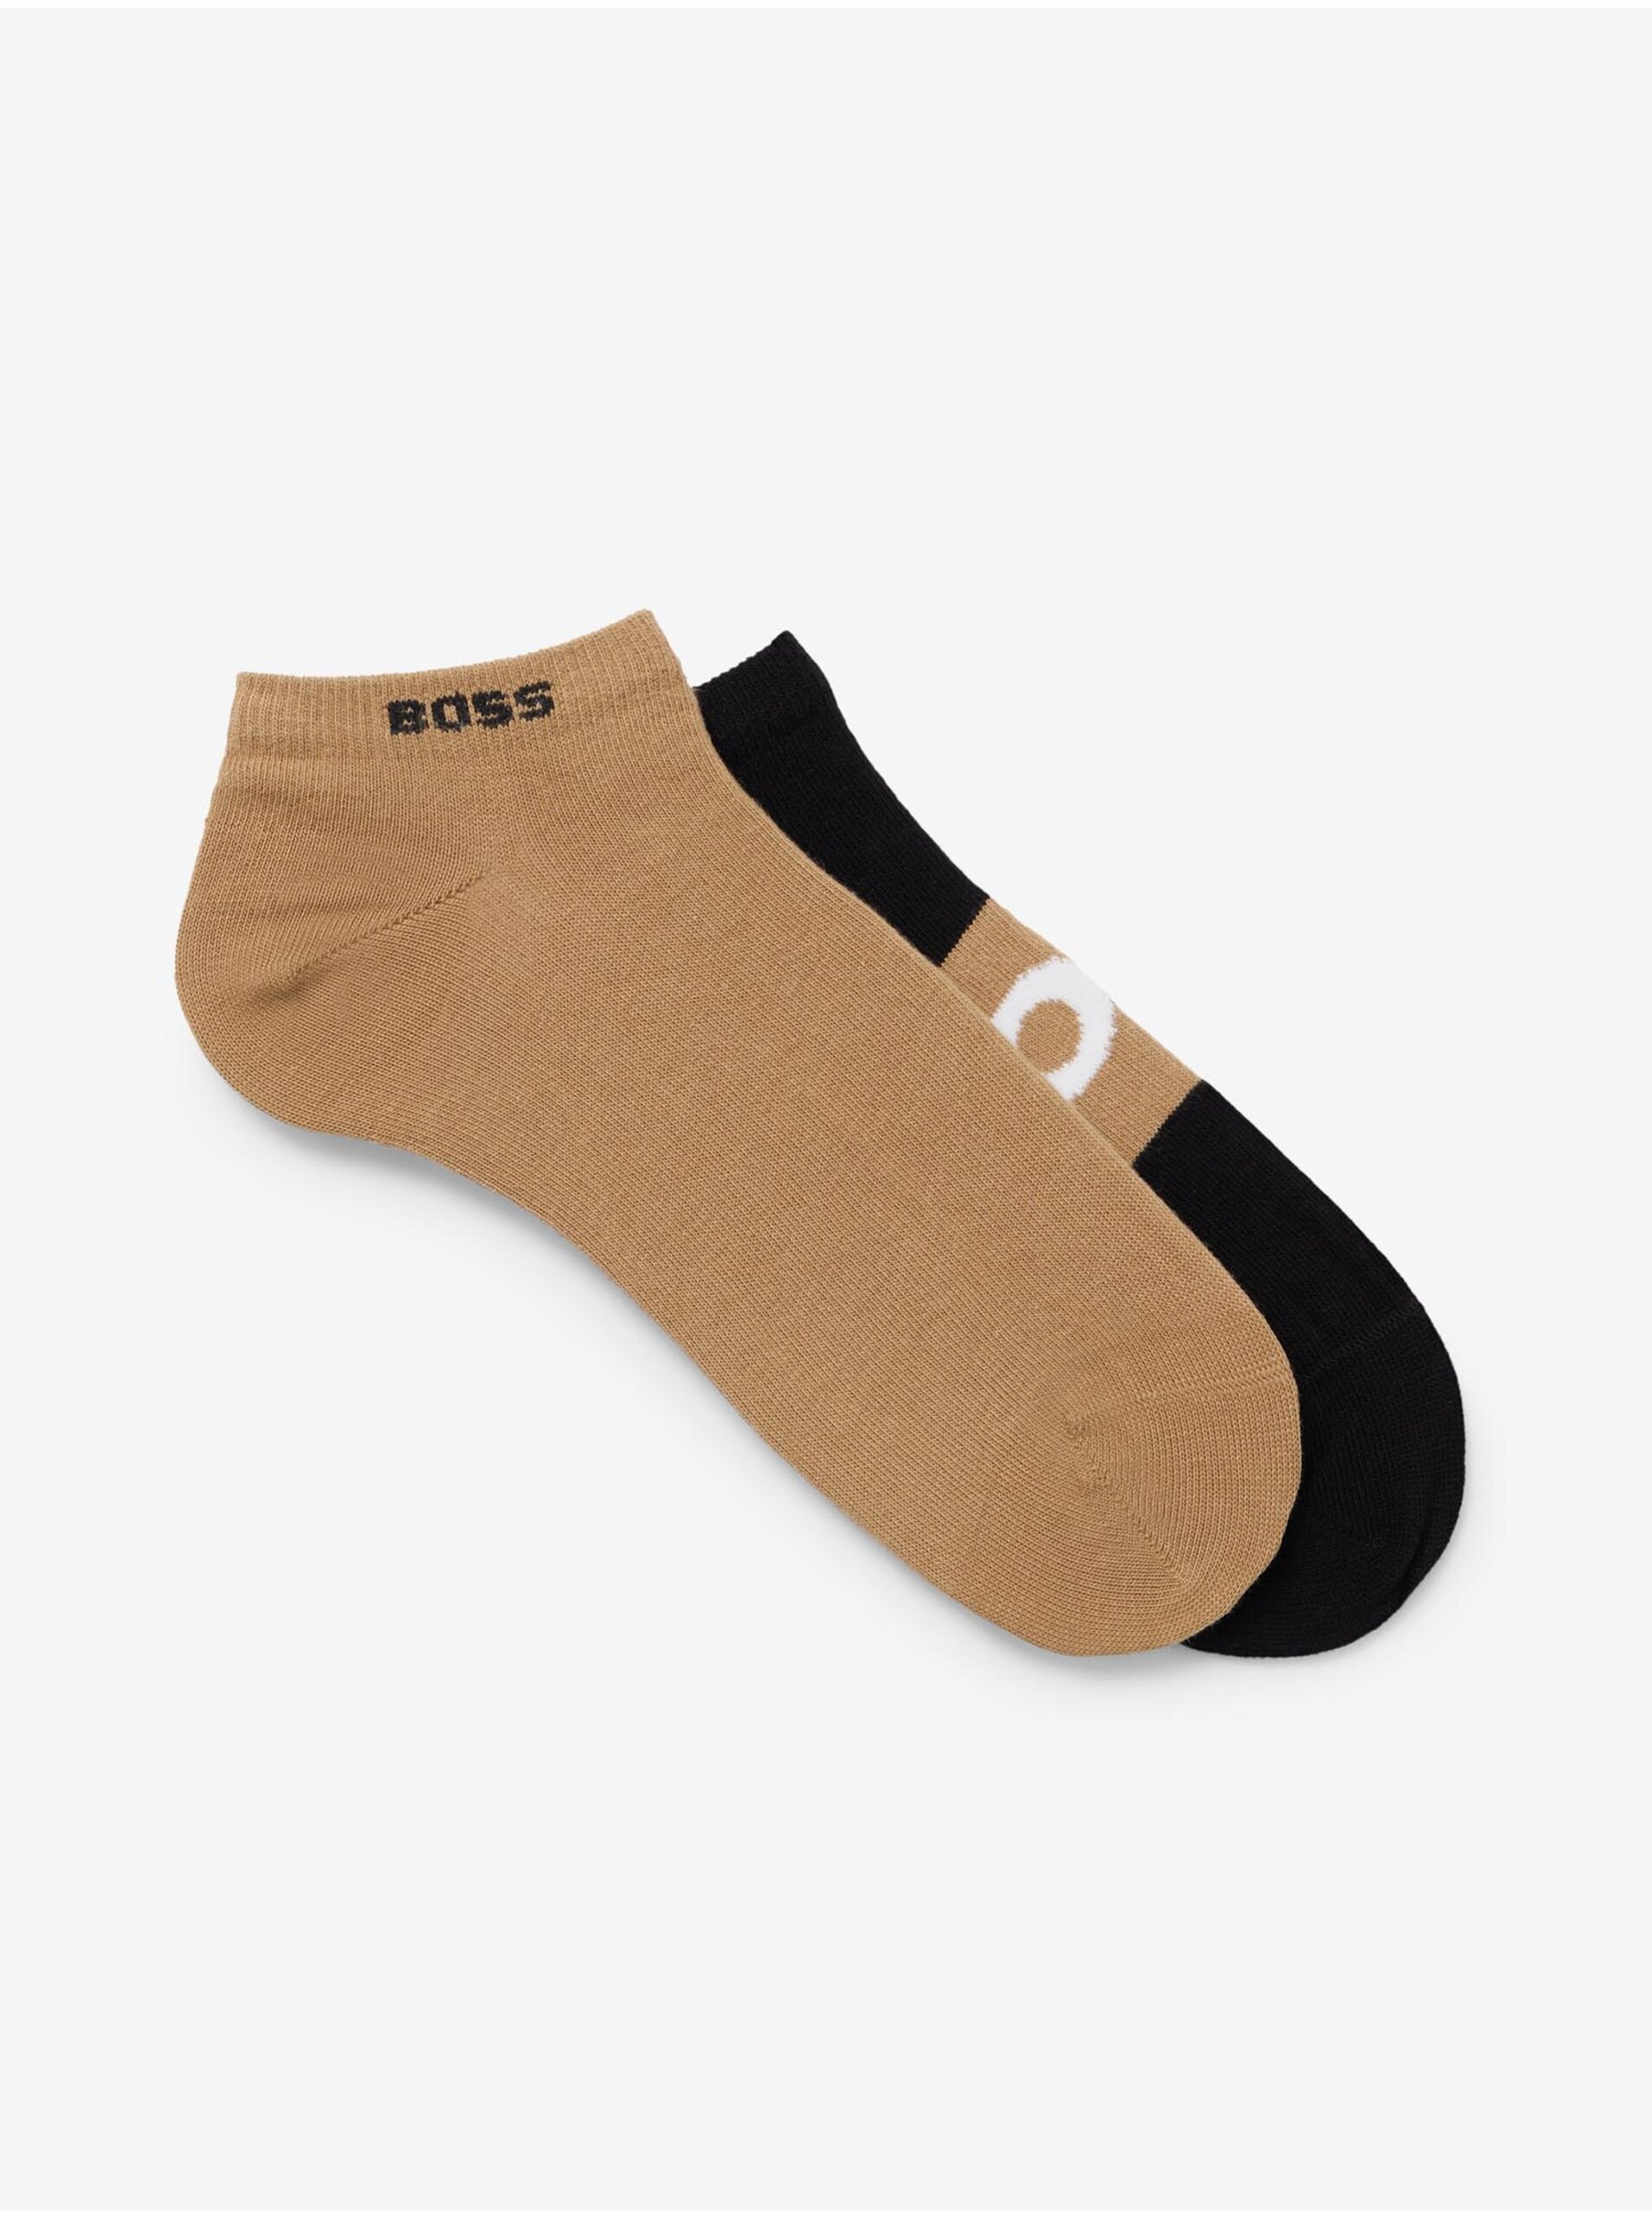 Lacno Súprava dvoch párov pánskych členkových ponožiek v čiernej a béžovej farbe BOSS